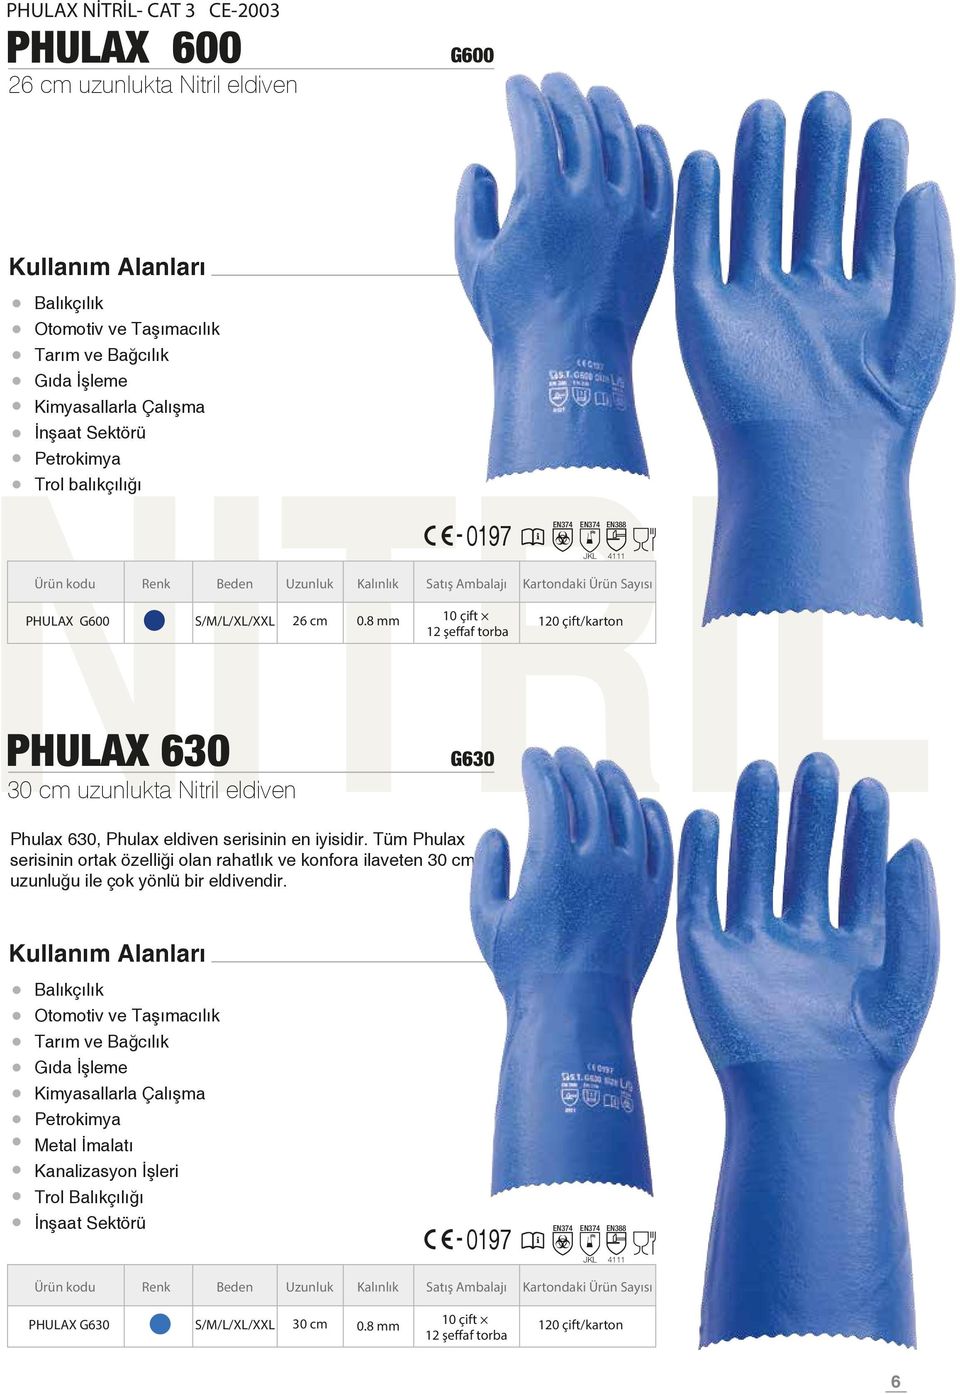 Tüm Phulax serisinin ortak özelliği olan rahatlık ve konfora ilaveten cm uzunluğu ile çok yönlü bir eldivendir.